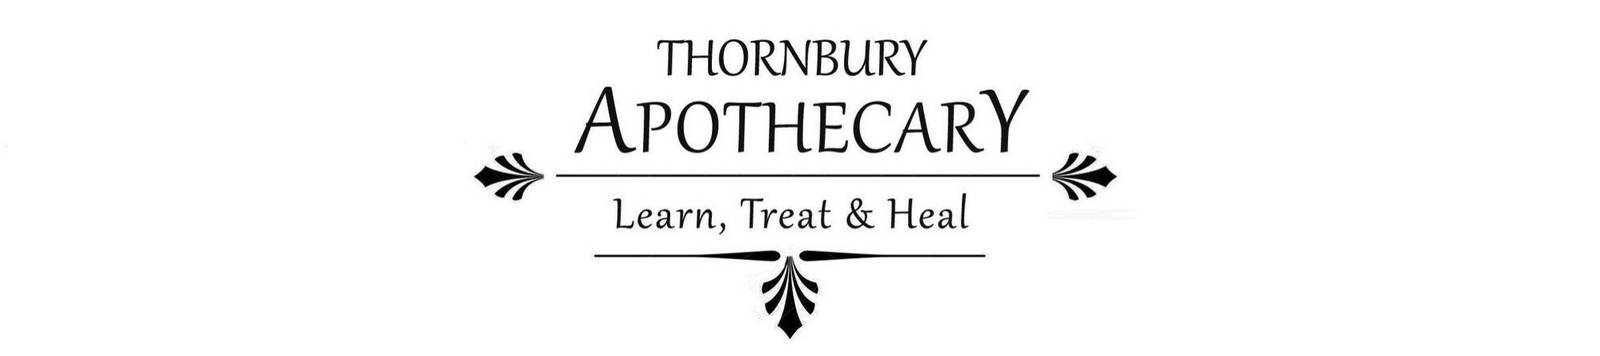 Thornbury Apothecary